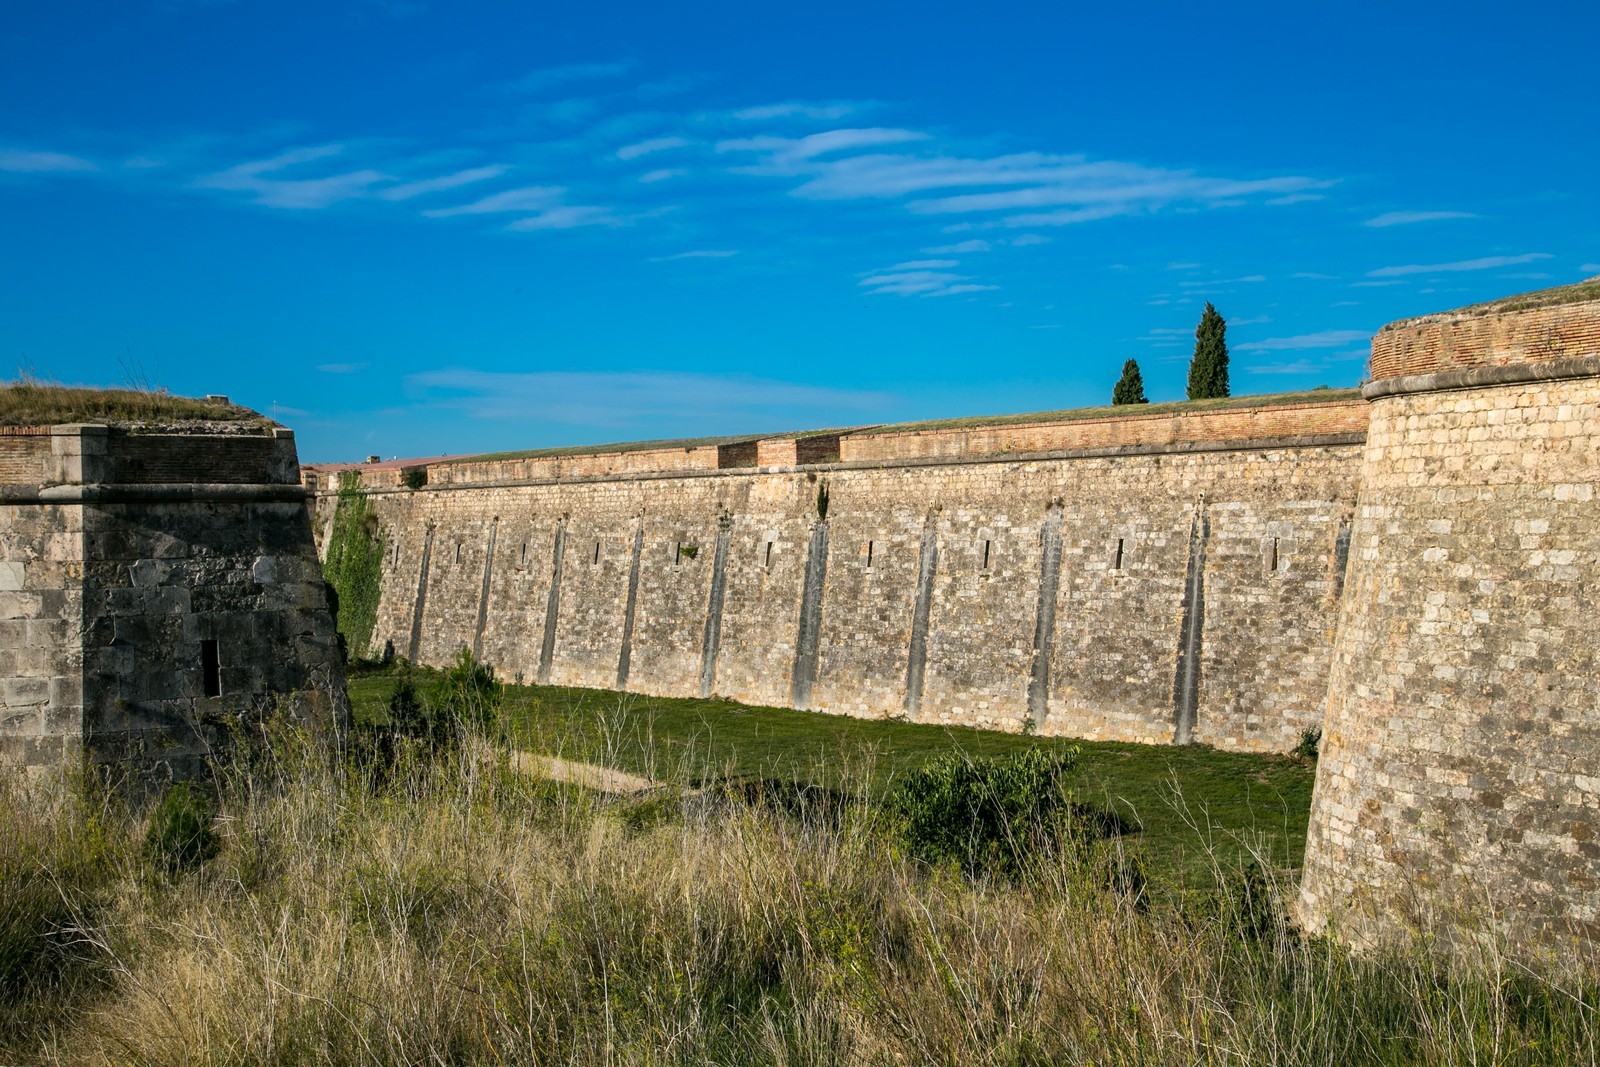 Sant Ferran Castle in Figueres